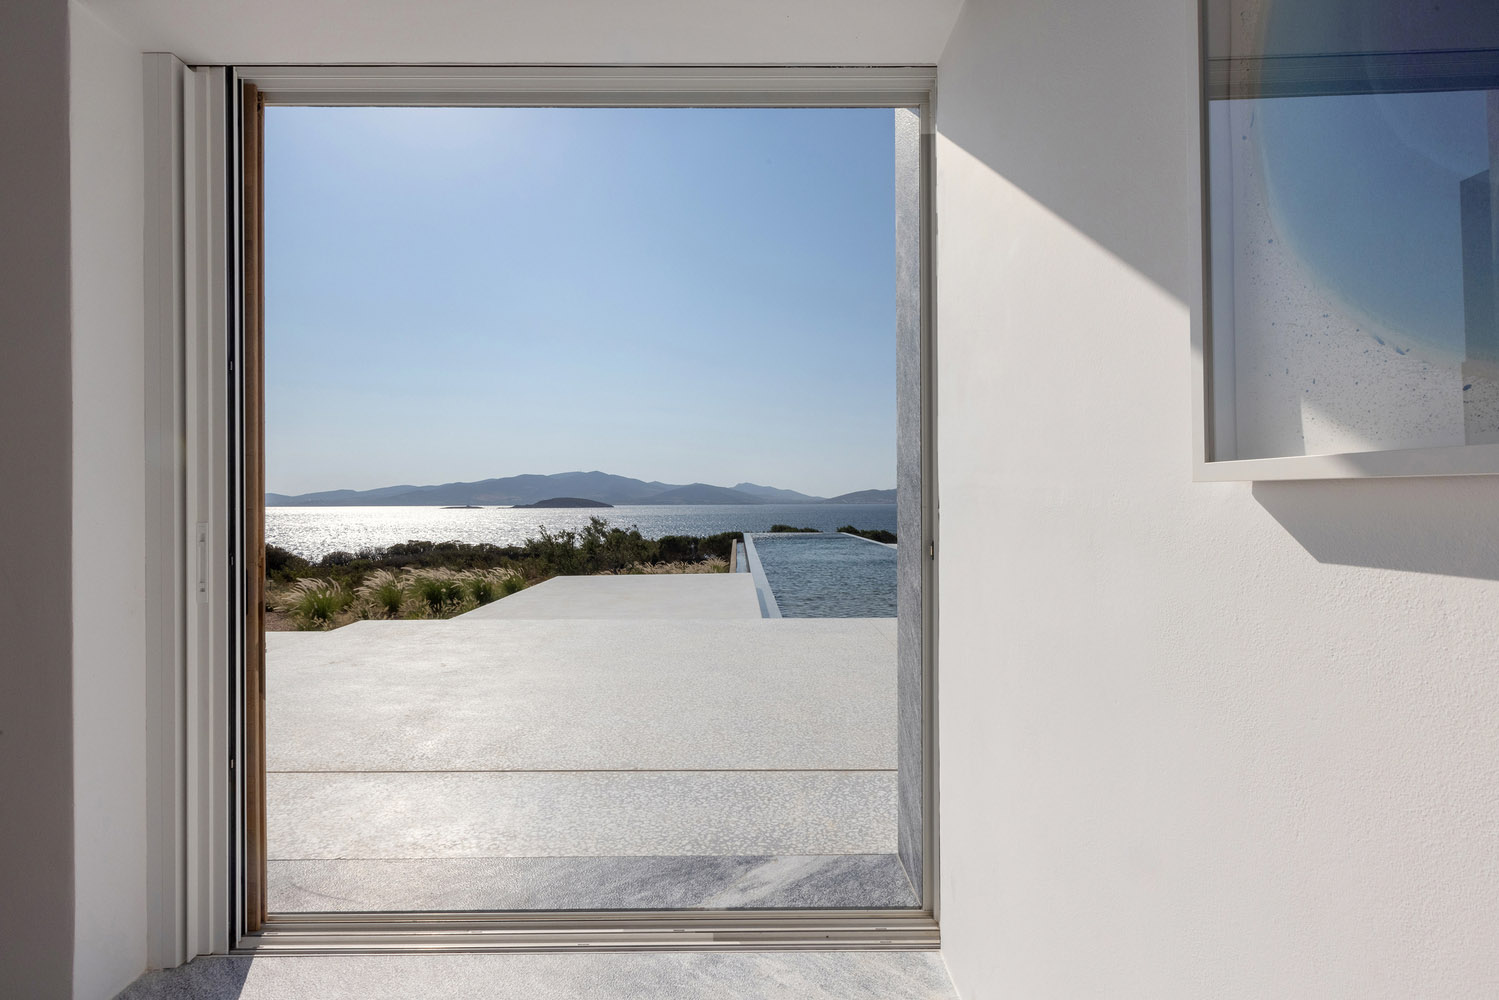 Studio Seilern Architects,国外海景别墅设计案例,别墅设计,爱琴海,希腊,极简主义,白色极简风格别墅,别墅设计方案